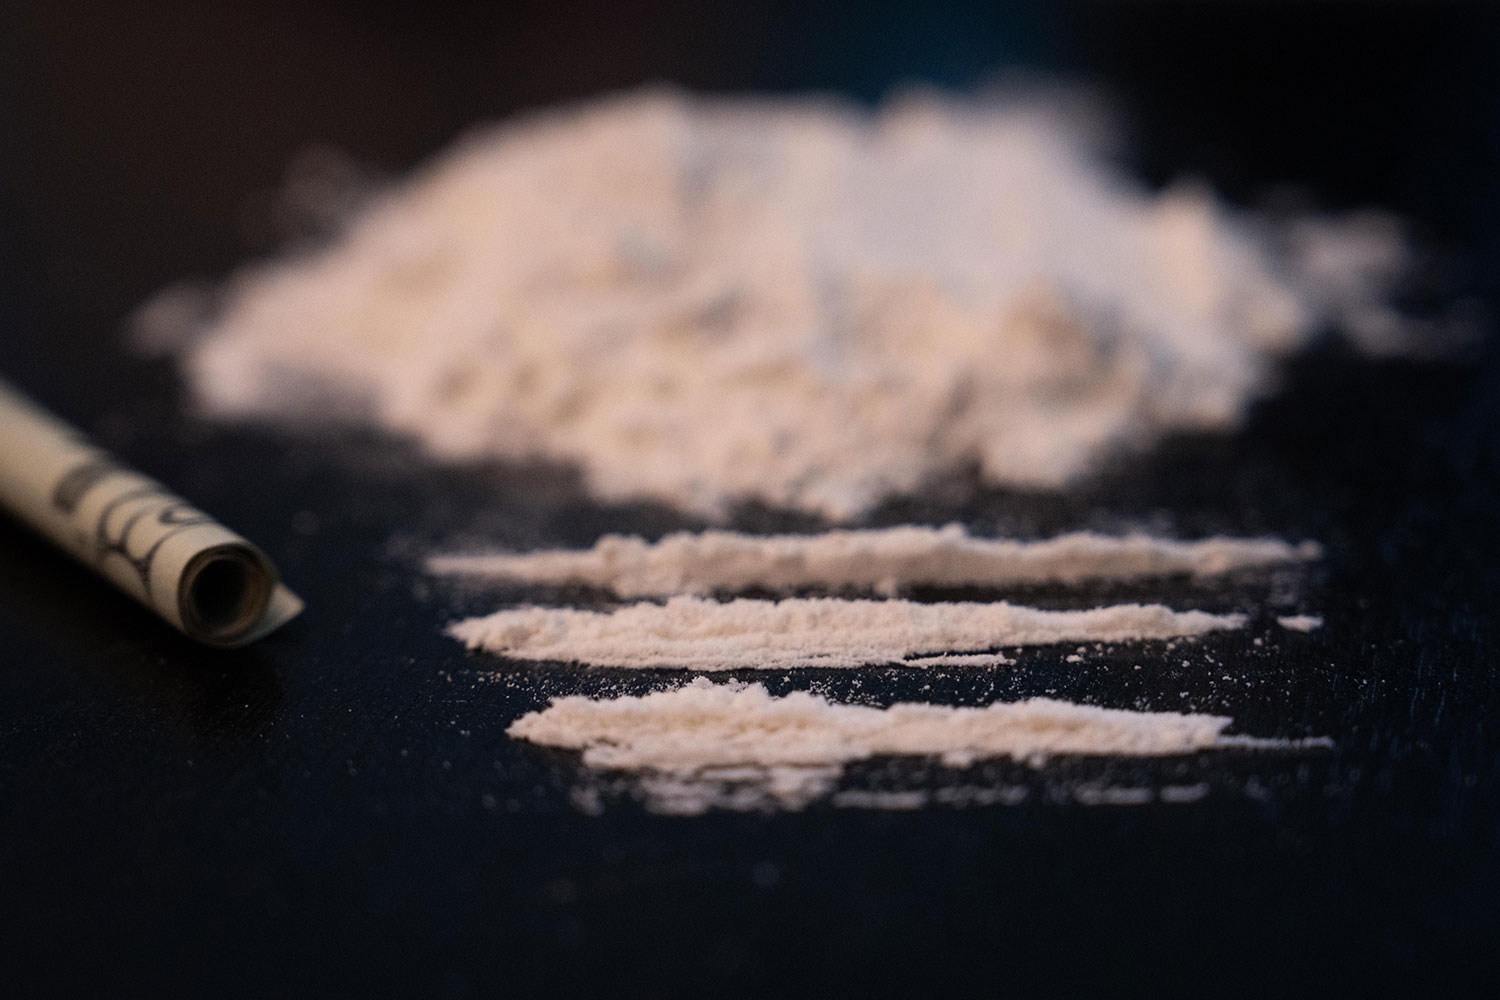 Unge nordmenn inntar en delt tredjeplass i Europa når det gjelder kokainbruk. 